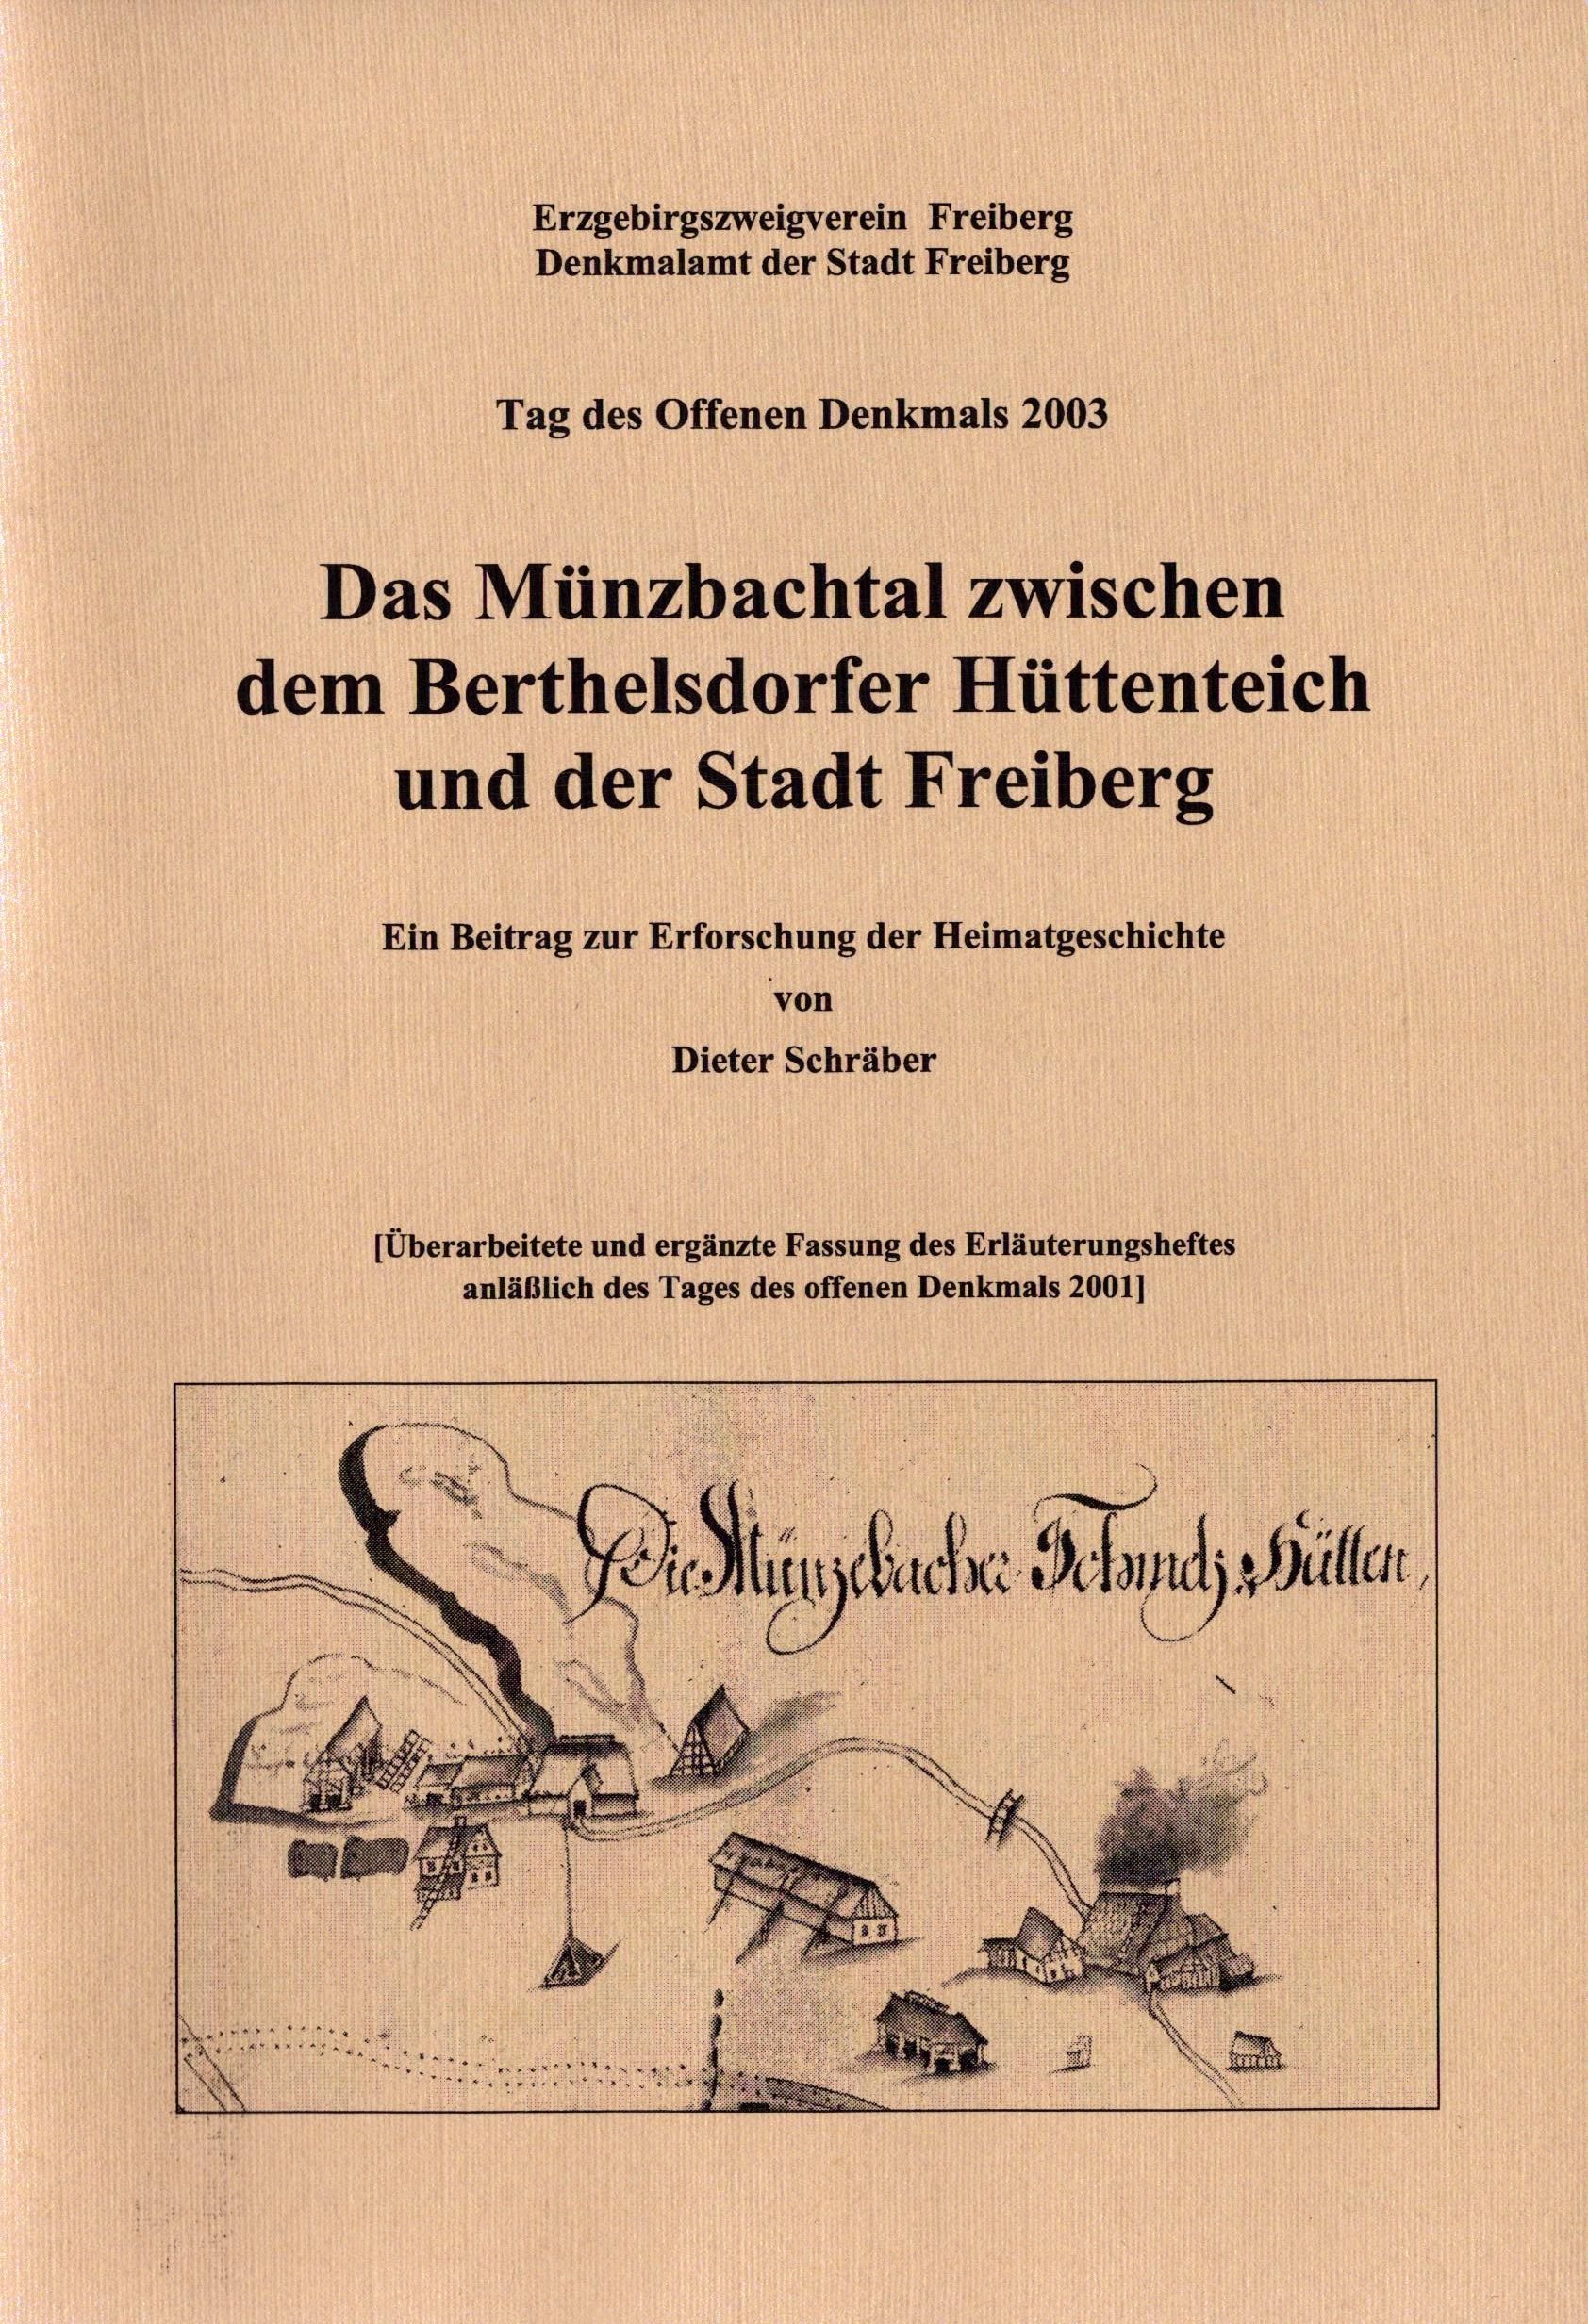 Das Münzbachtal zwischen dem Berthelsdorfer Hüttenteich und der Stadt Freiberg (Archiv SAXONIA-FREIBERG-STIFTUNG CC BY-NC-SA)